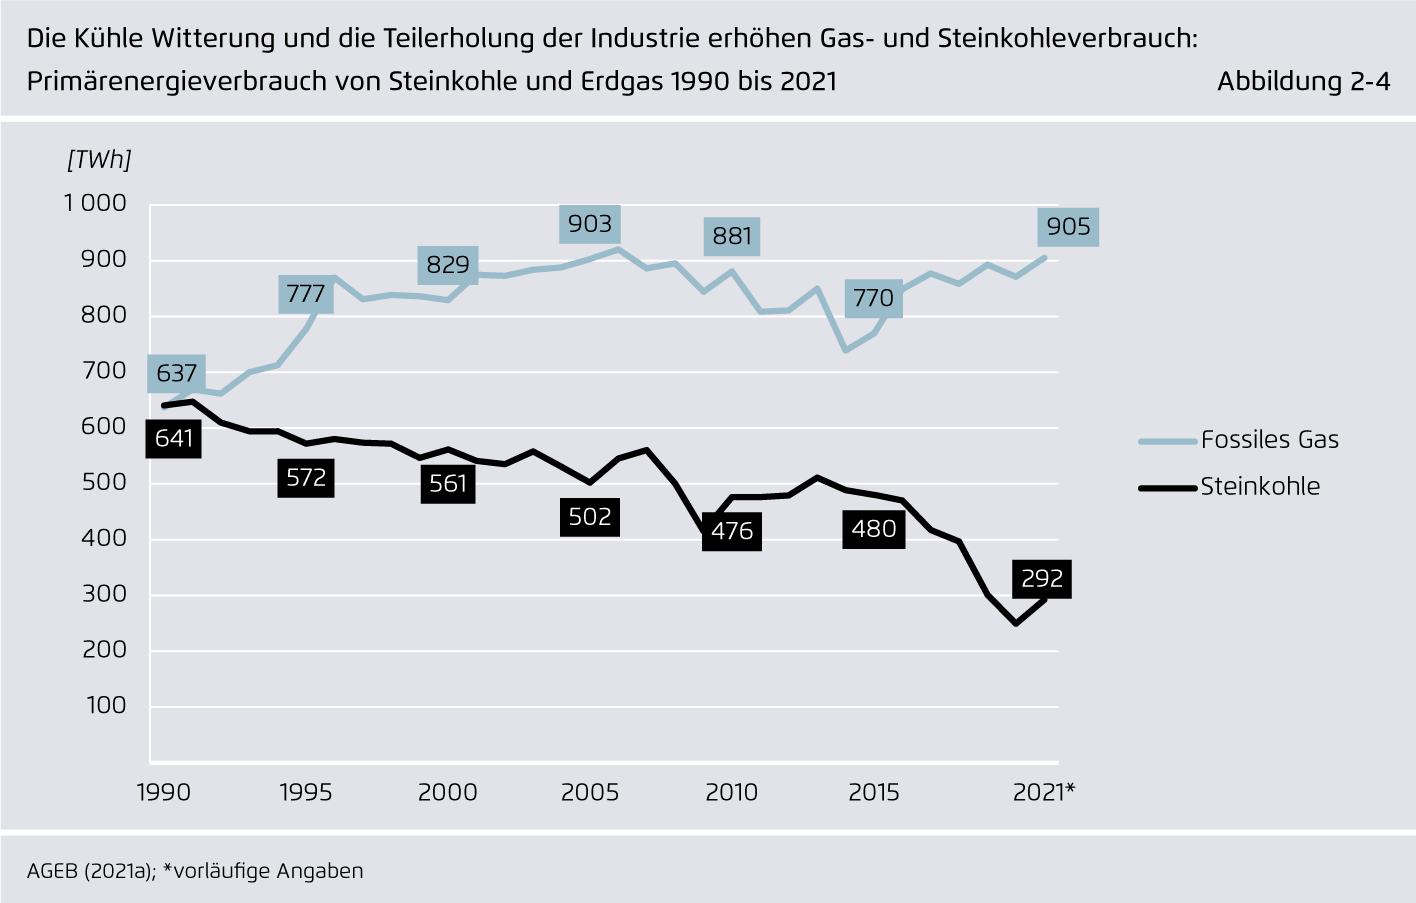 Preview for Die Kühle Witterung und die Teilerholung der Industrie erhöhen Gas- und Steinkohleverbrauch: Primärenergieverbrauch von Steinkohle und Erdgas 1990 bis 2021